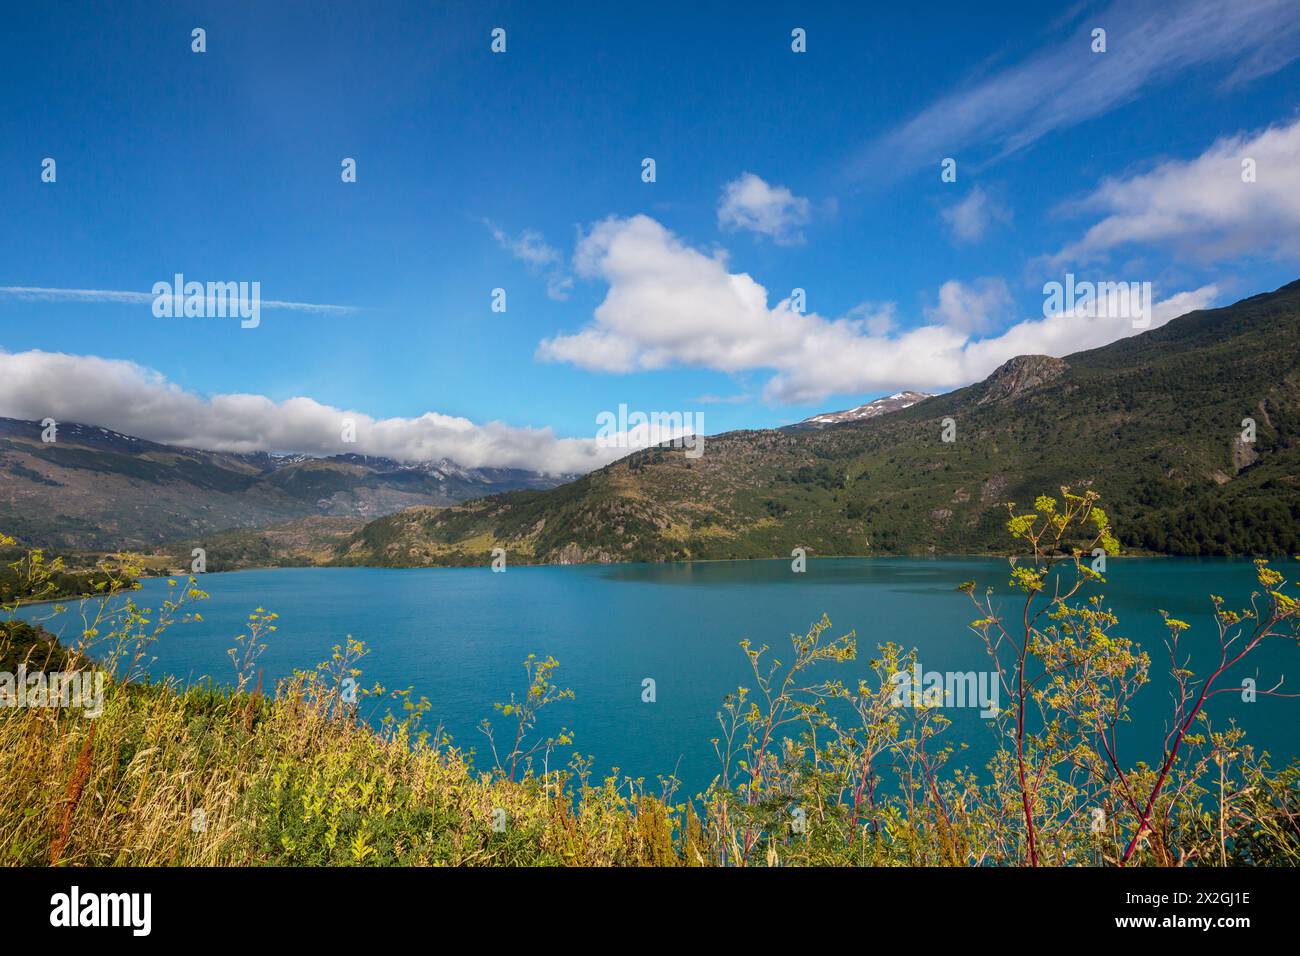 General Carrera Lake, Carretera Austral, Patagonien - Chile. Wunderschöne Naturlandschaften in Südamerika Stockfoto